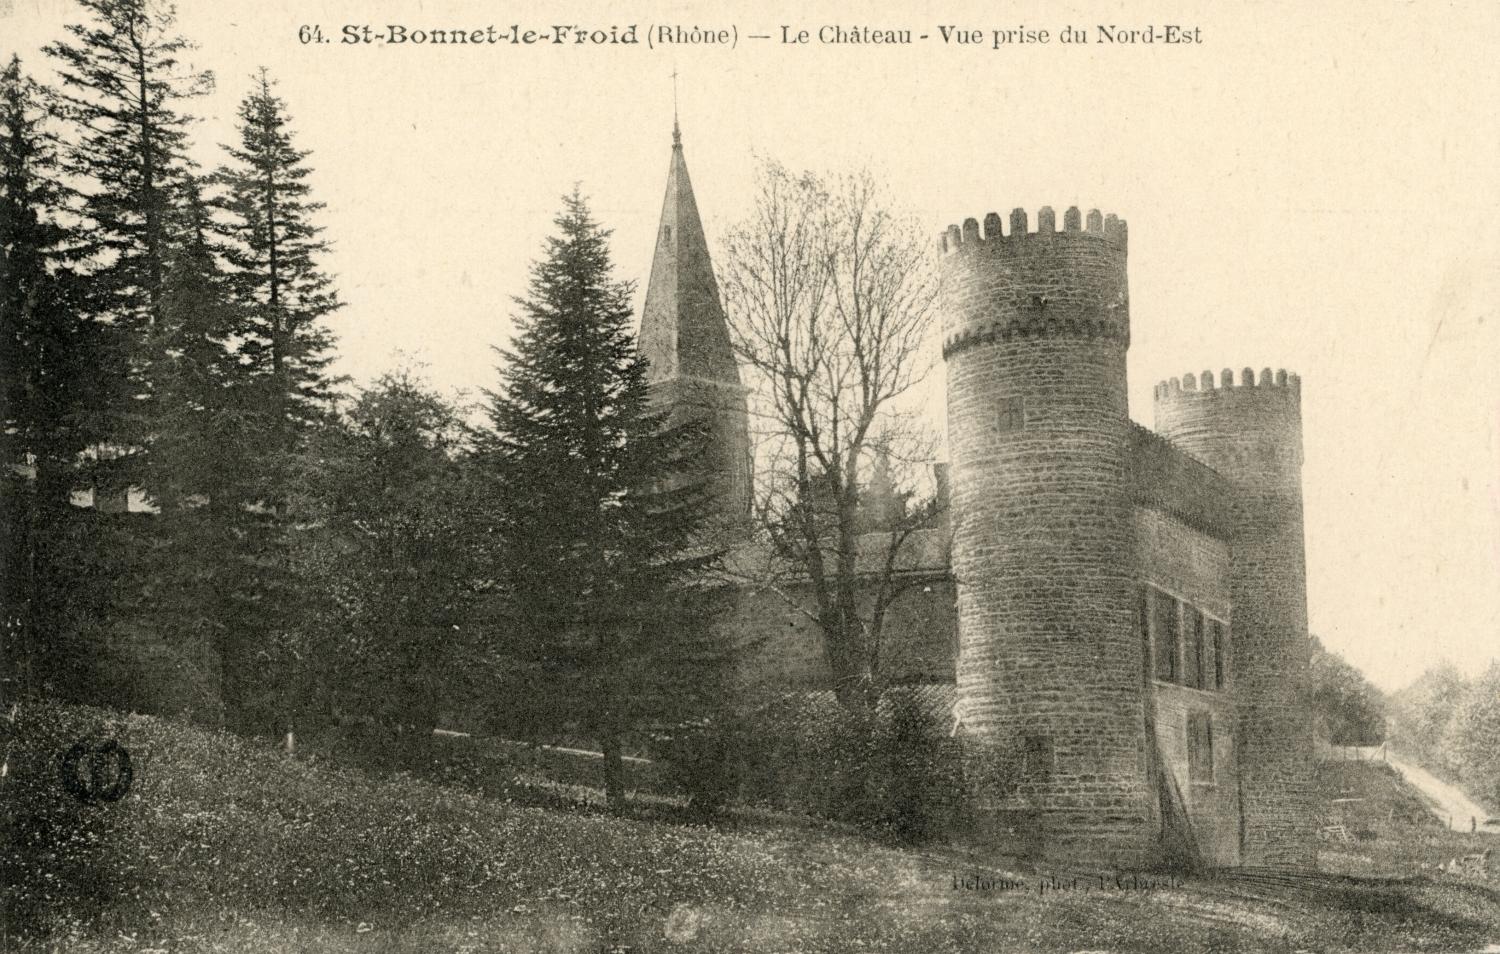 Saint-Bonnet-le-Froid (Rhône). - Le château. - Vue prise du nord-est